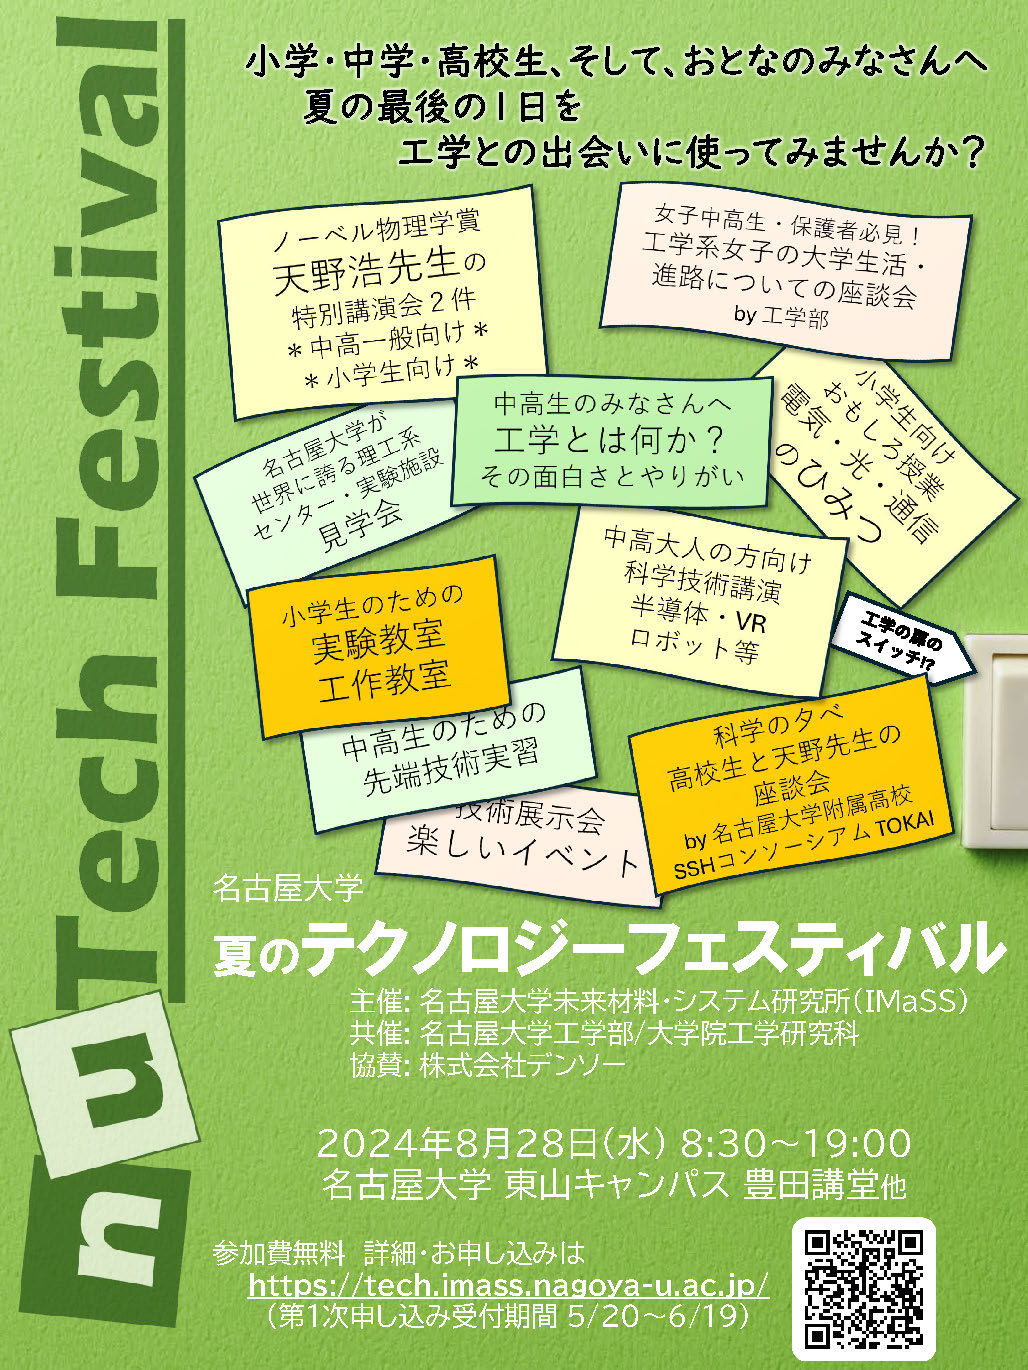 名古屋大学 夏のテクノロジーフェスティバル